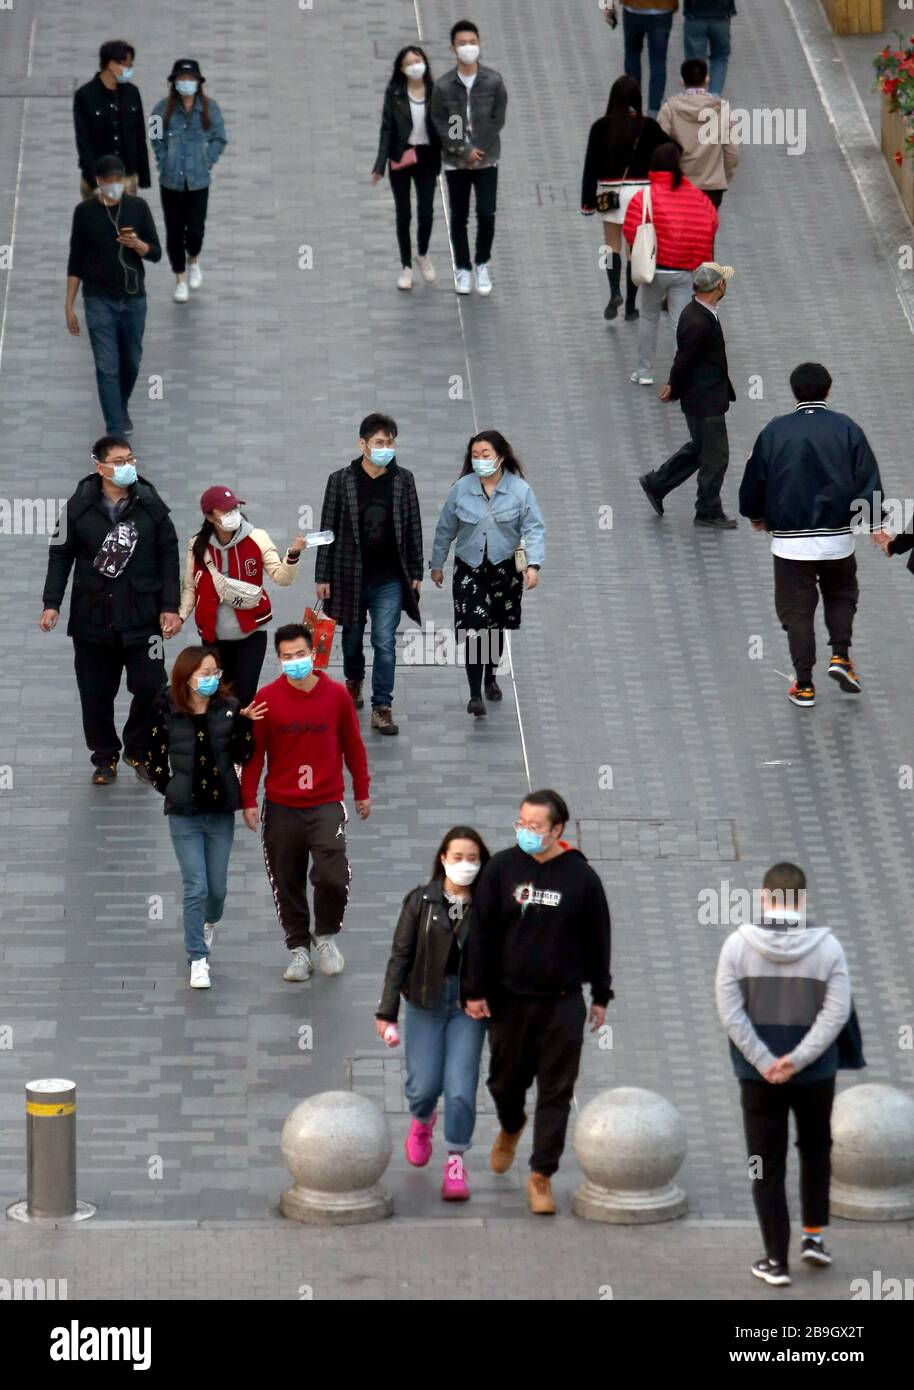 Pechino, Cina. 24 Marzo 2020. I Cinesi indossano ancora maschere facciali protettive mentre visitano un'area commerciale mentre la minaccia del coronavirus mortale (Covid-19) si affievolisce a Pechino martedì 24 marzo 2020. La Cina continua a non segnalare nuovi casi di coronavirus trasmessi localmente dall'inizio dell'epidemia di coronavirus. Foto di Stephen Shaver/UPI Credit: UPI/Alamy Live News Foto Stock